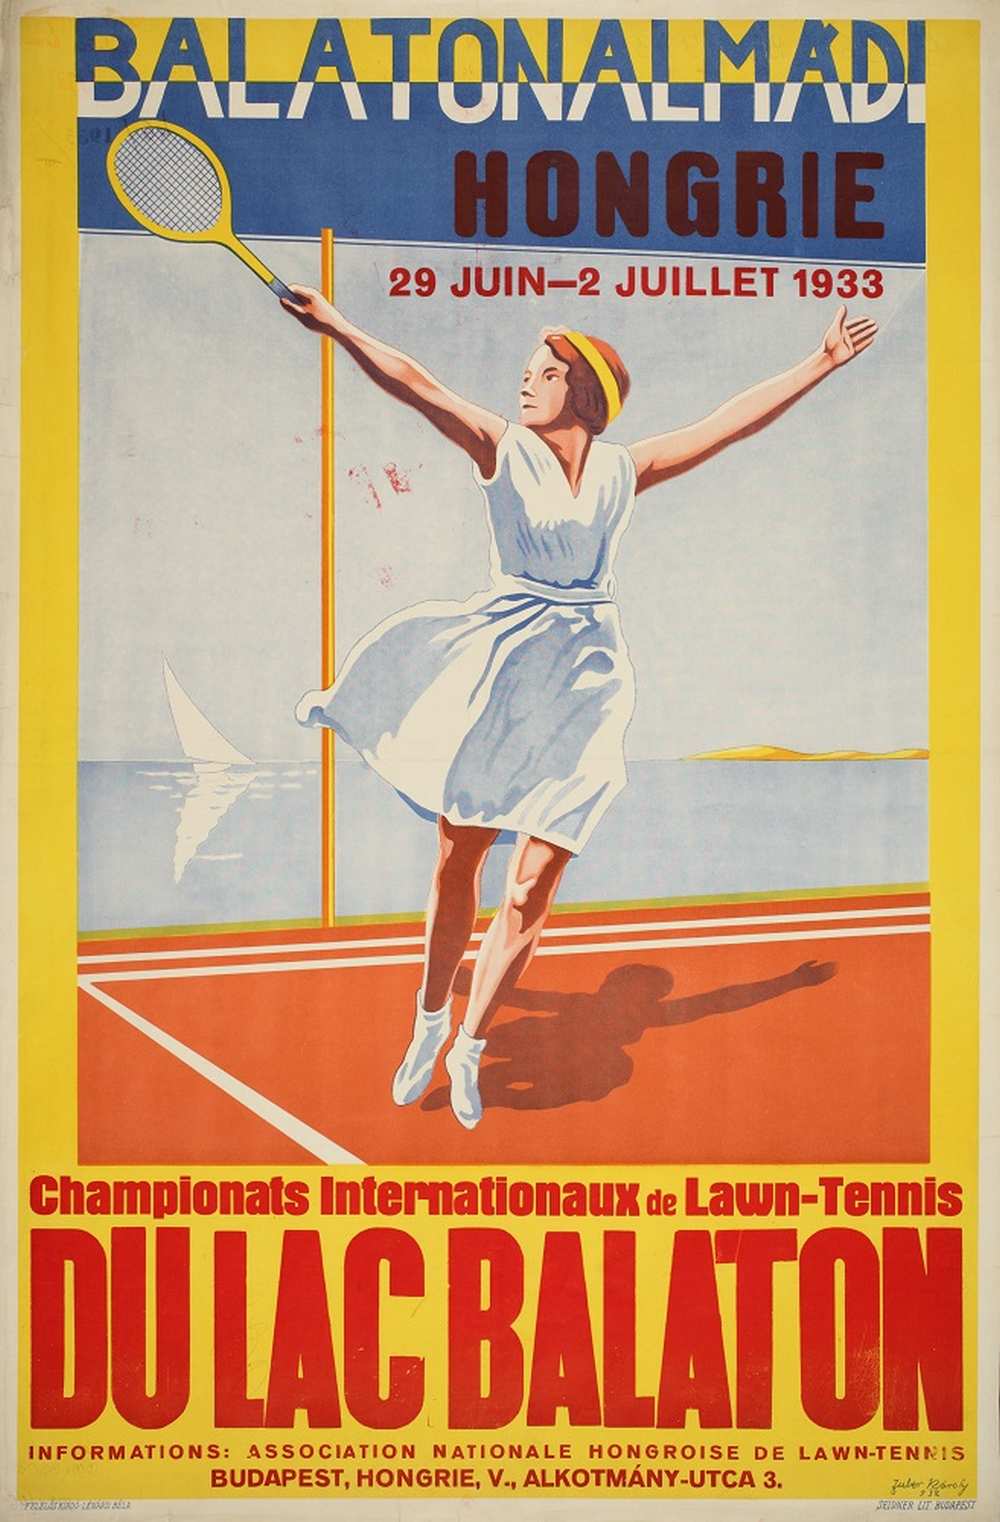 Zuber Károly: Balatonalmádi Campionats Internationaux de Lawn-Tennis (1933). Jelzet: PKG.1933/46 – Térkép-, Plakát- és Kisnyomtatványtár http://nektar.oszk.hu/hu/manifestation/2789891